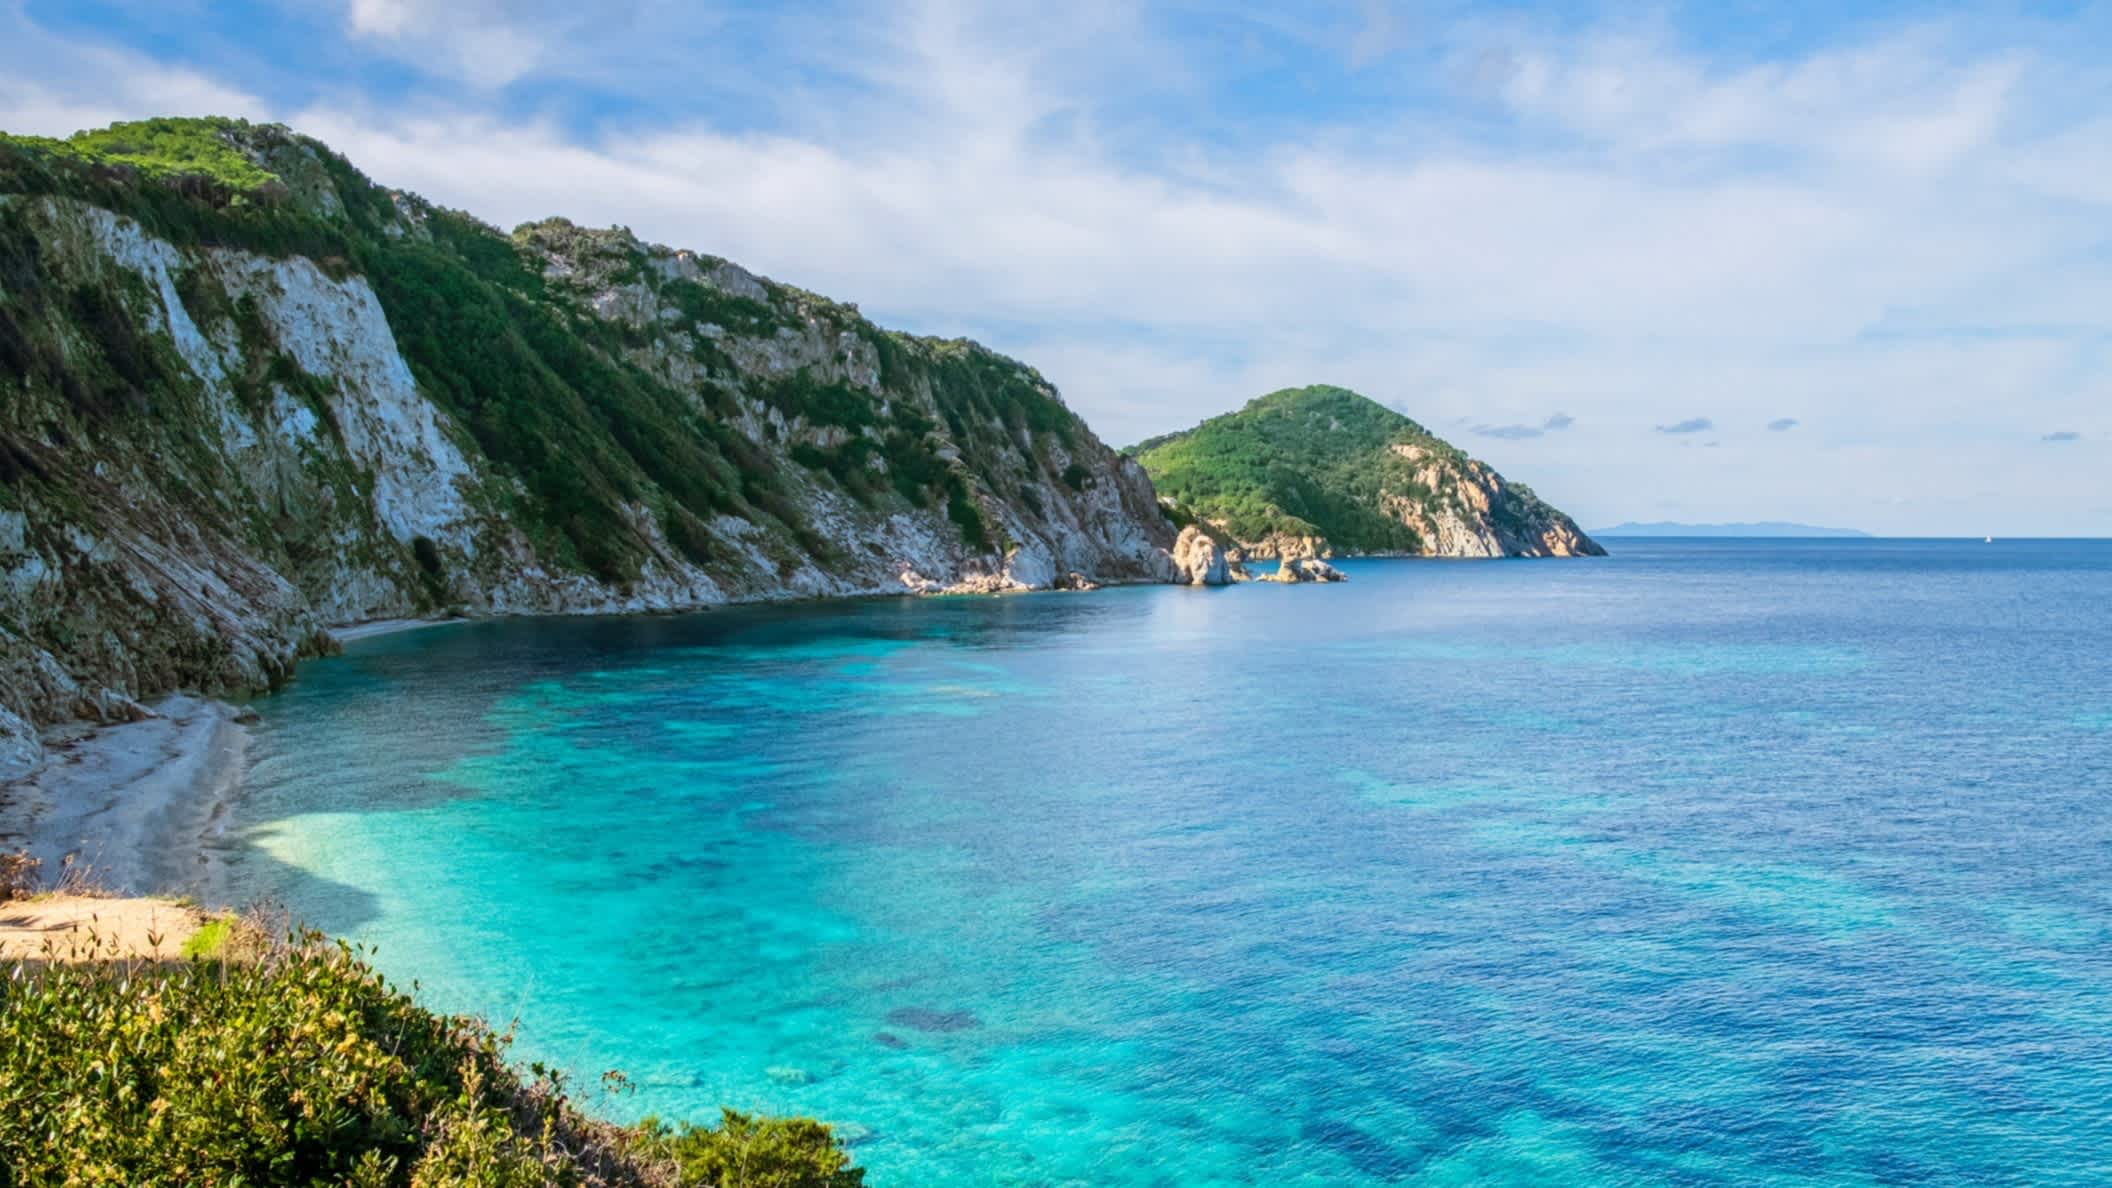 Blick auf den Sansone Beach auf Elba, Toskanischen Archipel, Italien sowie das blaue Meer, das Riff und die umliegenden Klippen.